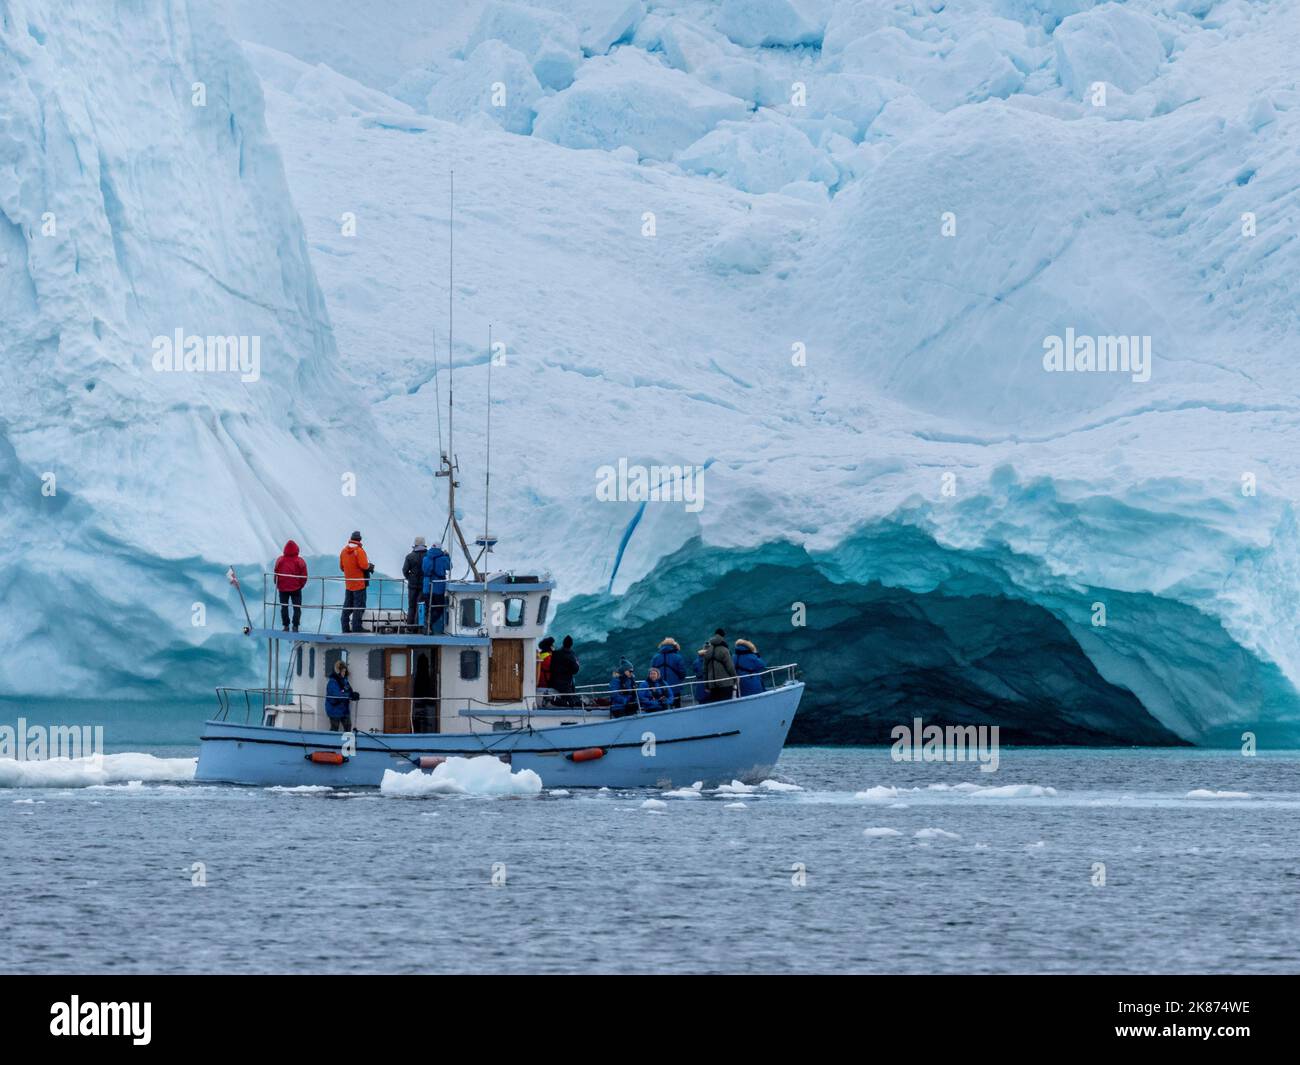 Touristes prenant une excursion sur glace dans un petit bateau observant les icebergs du Ilulissat Icefjord, juste à l'extérieur d'Ilulissat, Groenland, Danemark, régions polaires Banque D'Images